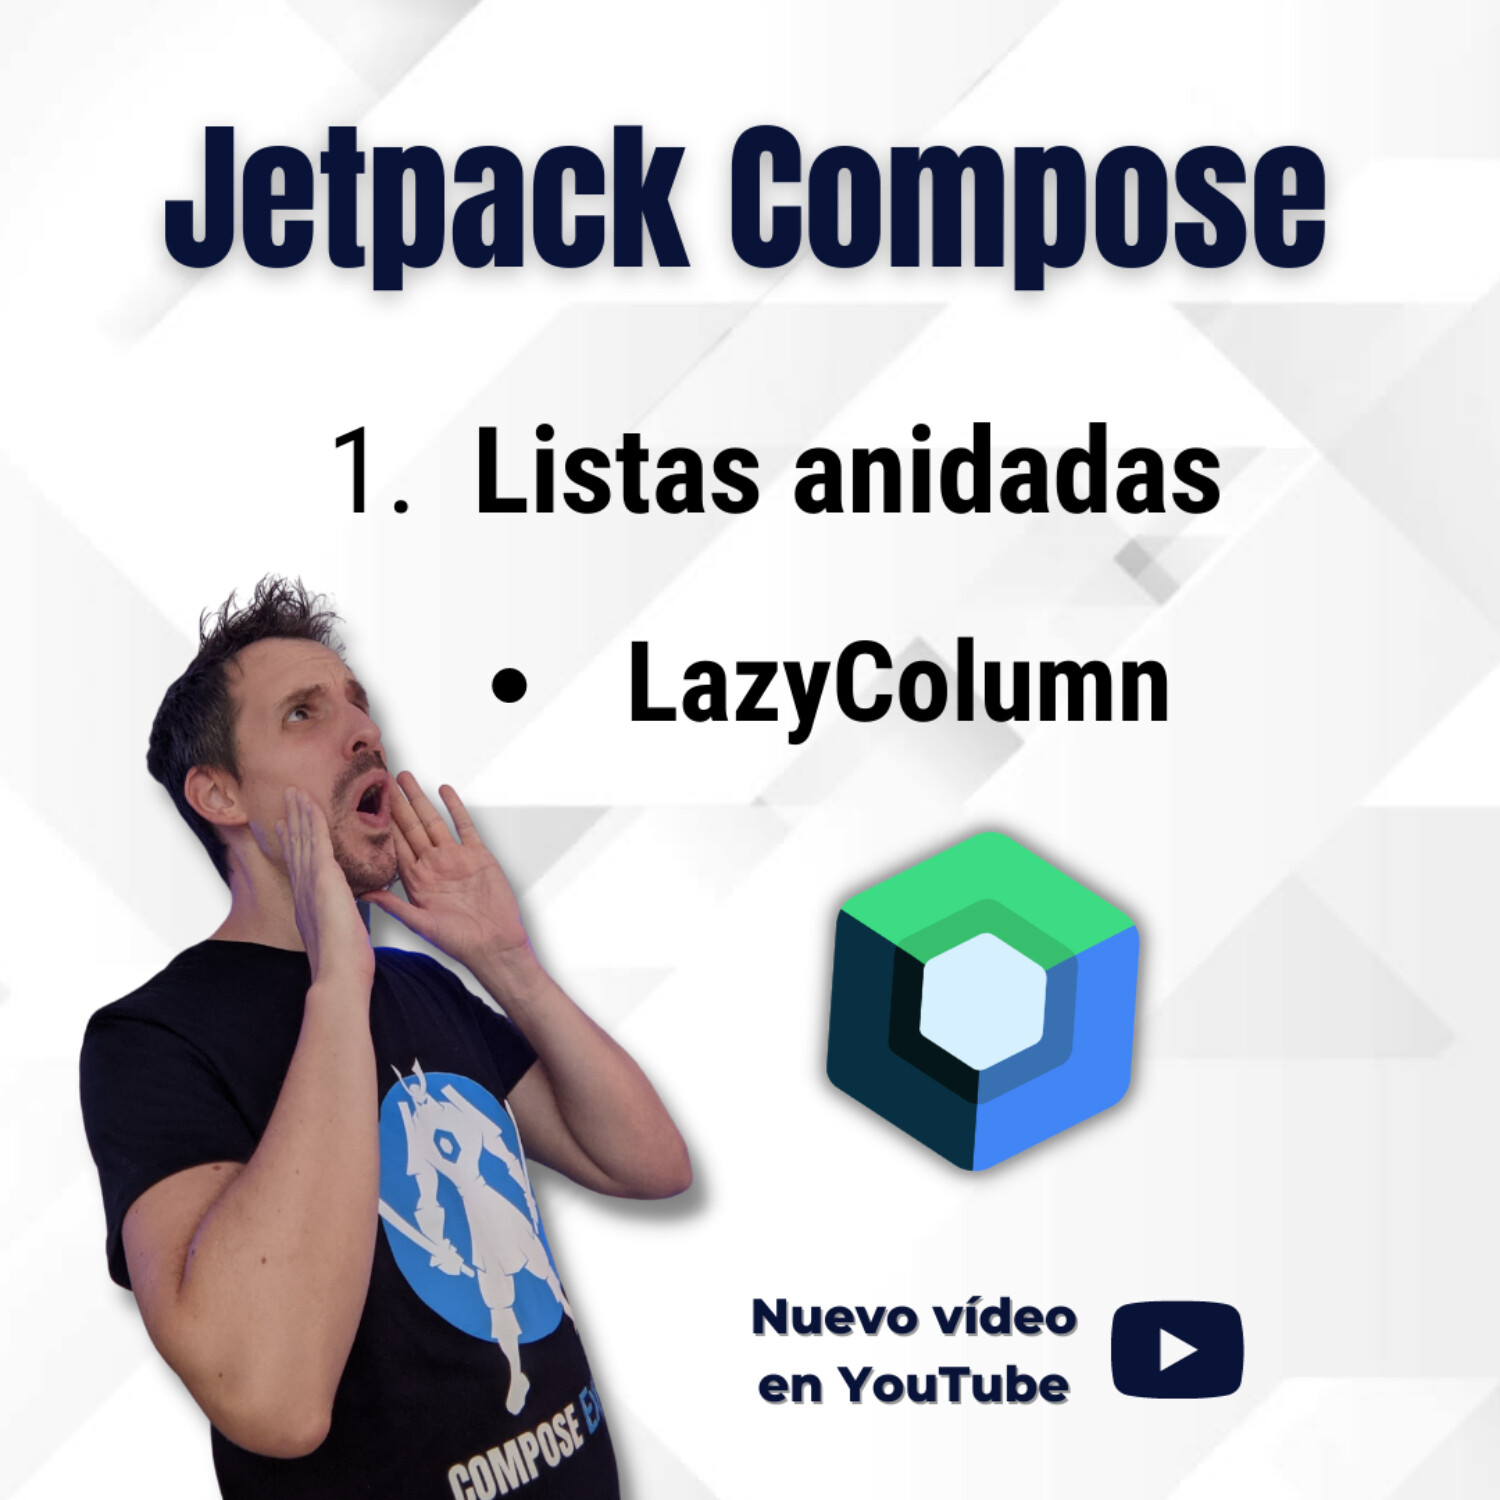 Cómo crear Listas anidadas con LazyColumn 🔵 Jetpack Compose | EP 131